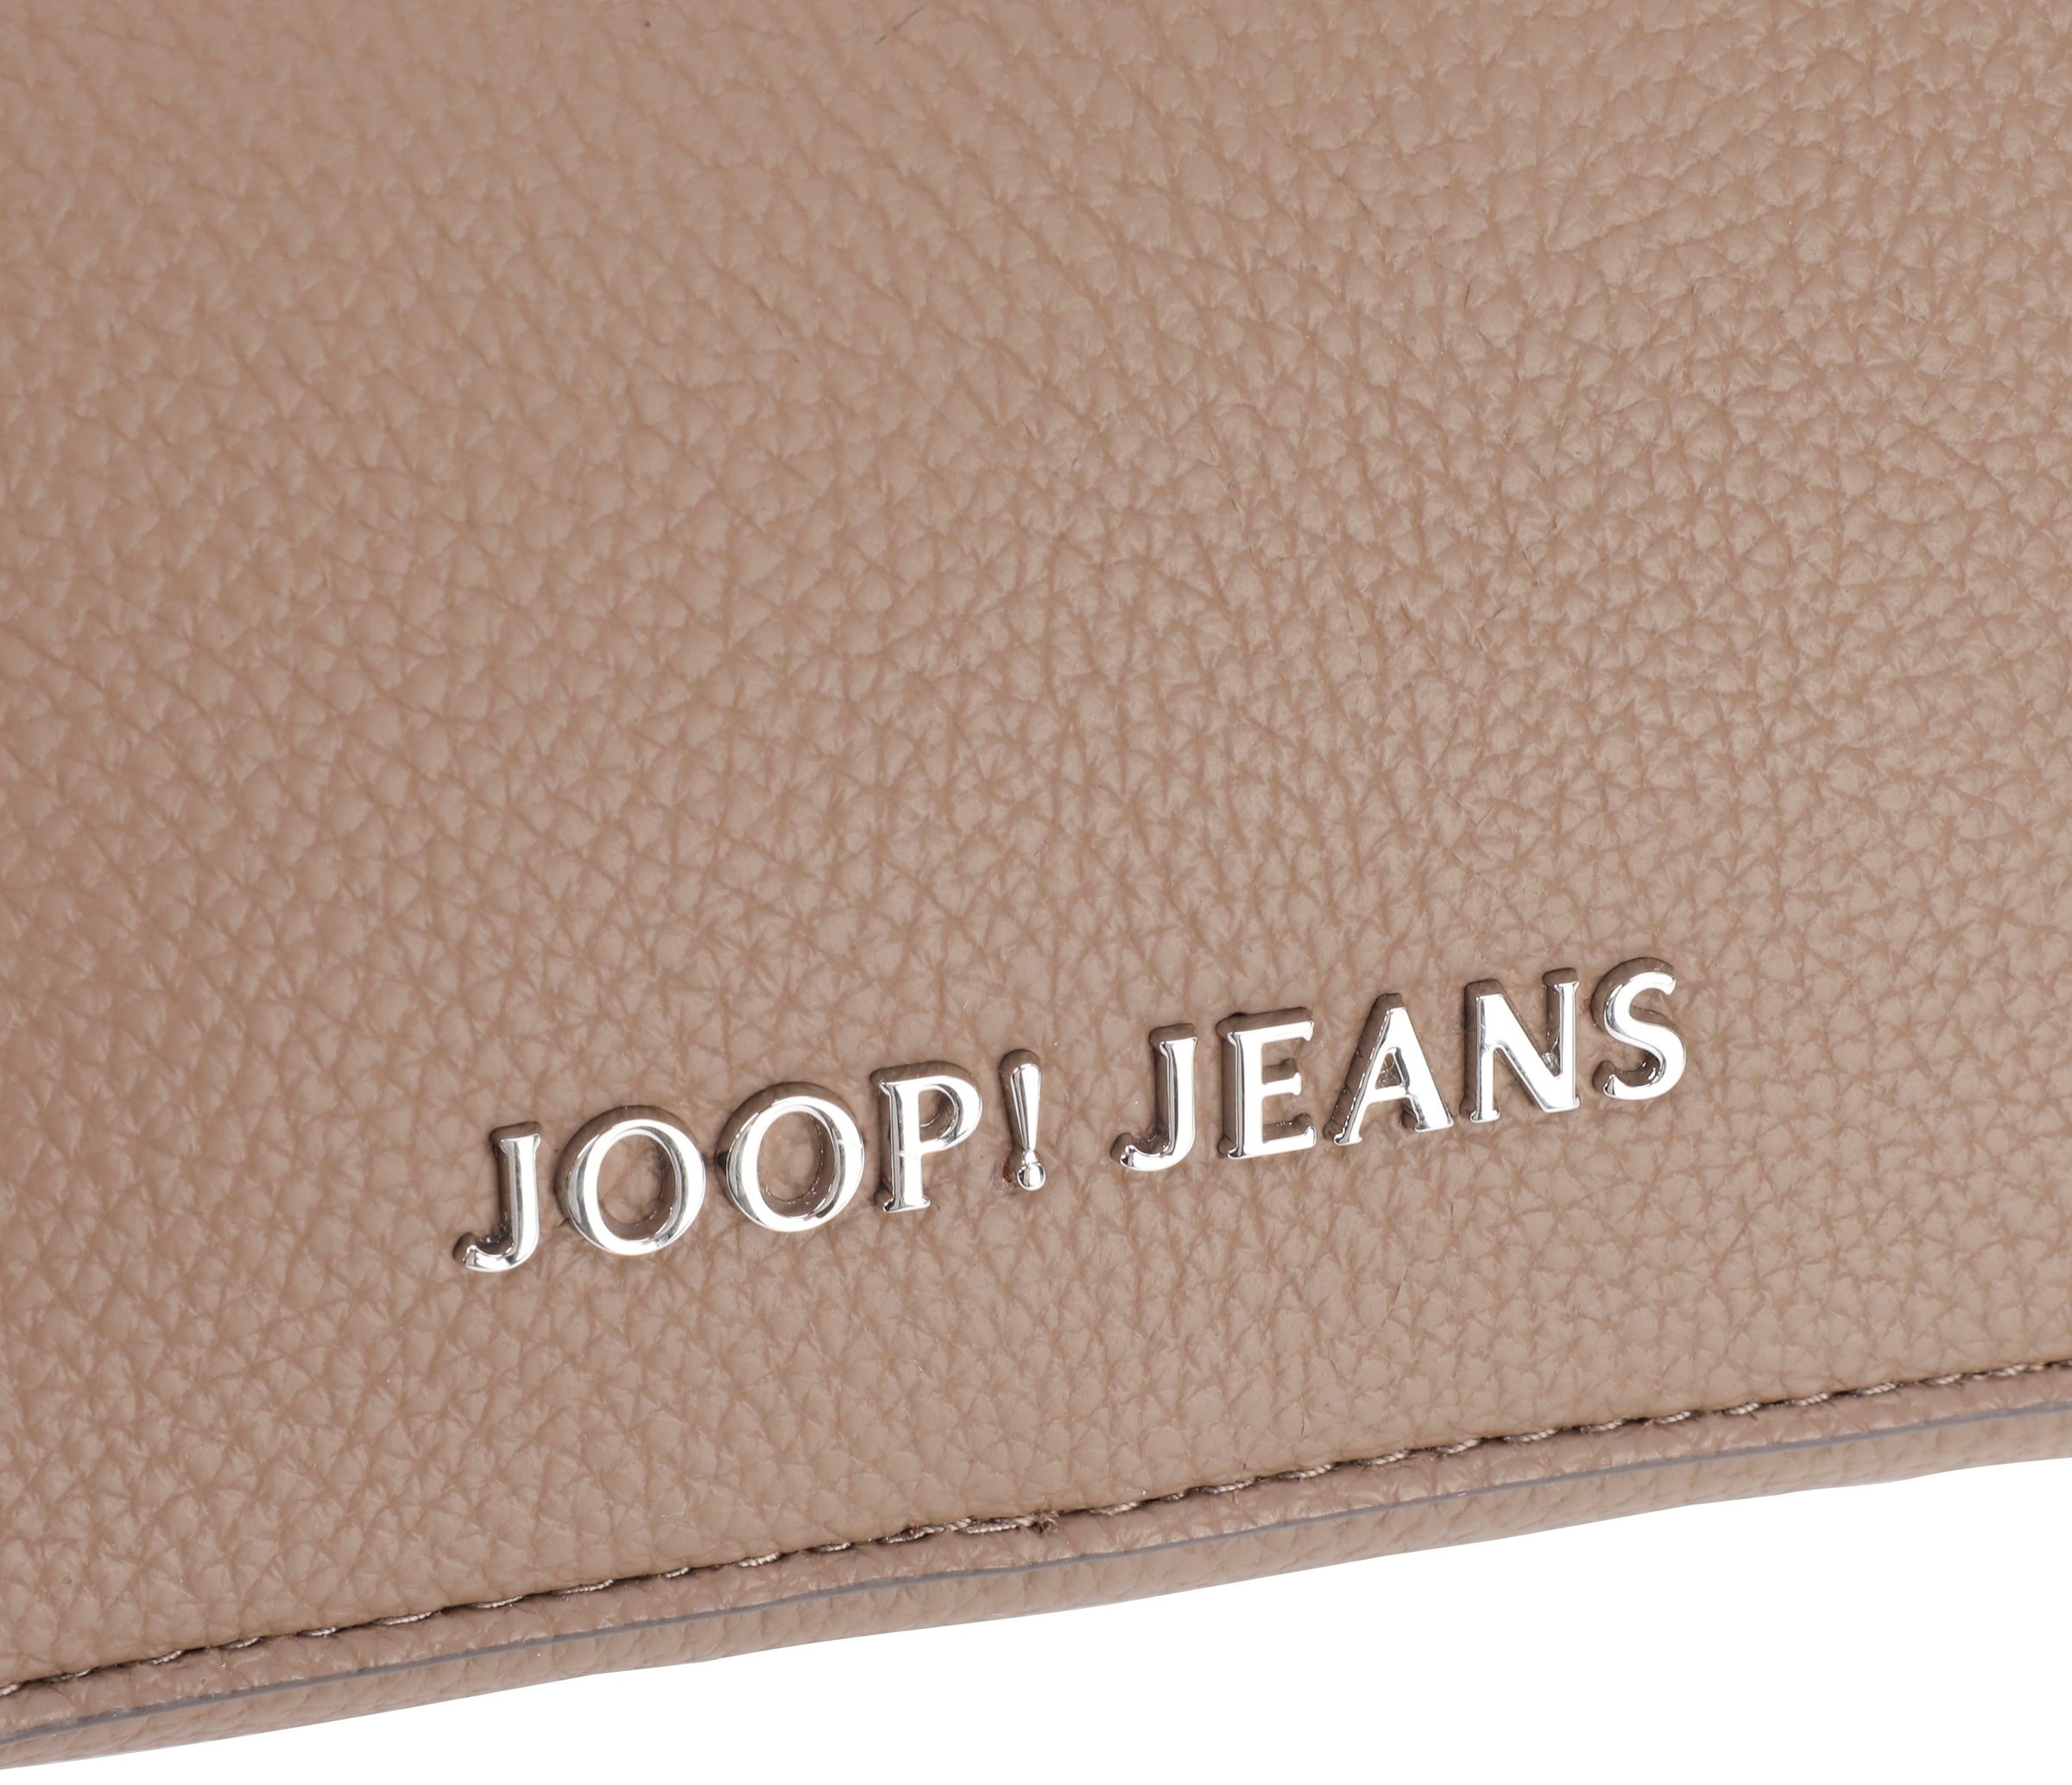 Joop Jeans Umhängetasche »diurno shoulderbag xshz«, mit dekorativem Anhänger